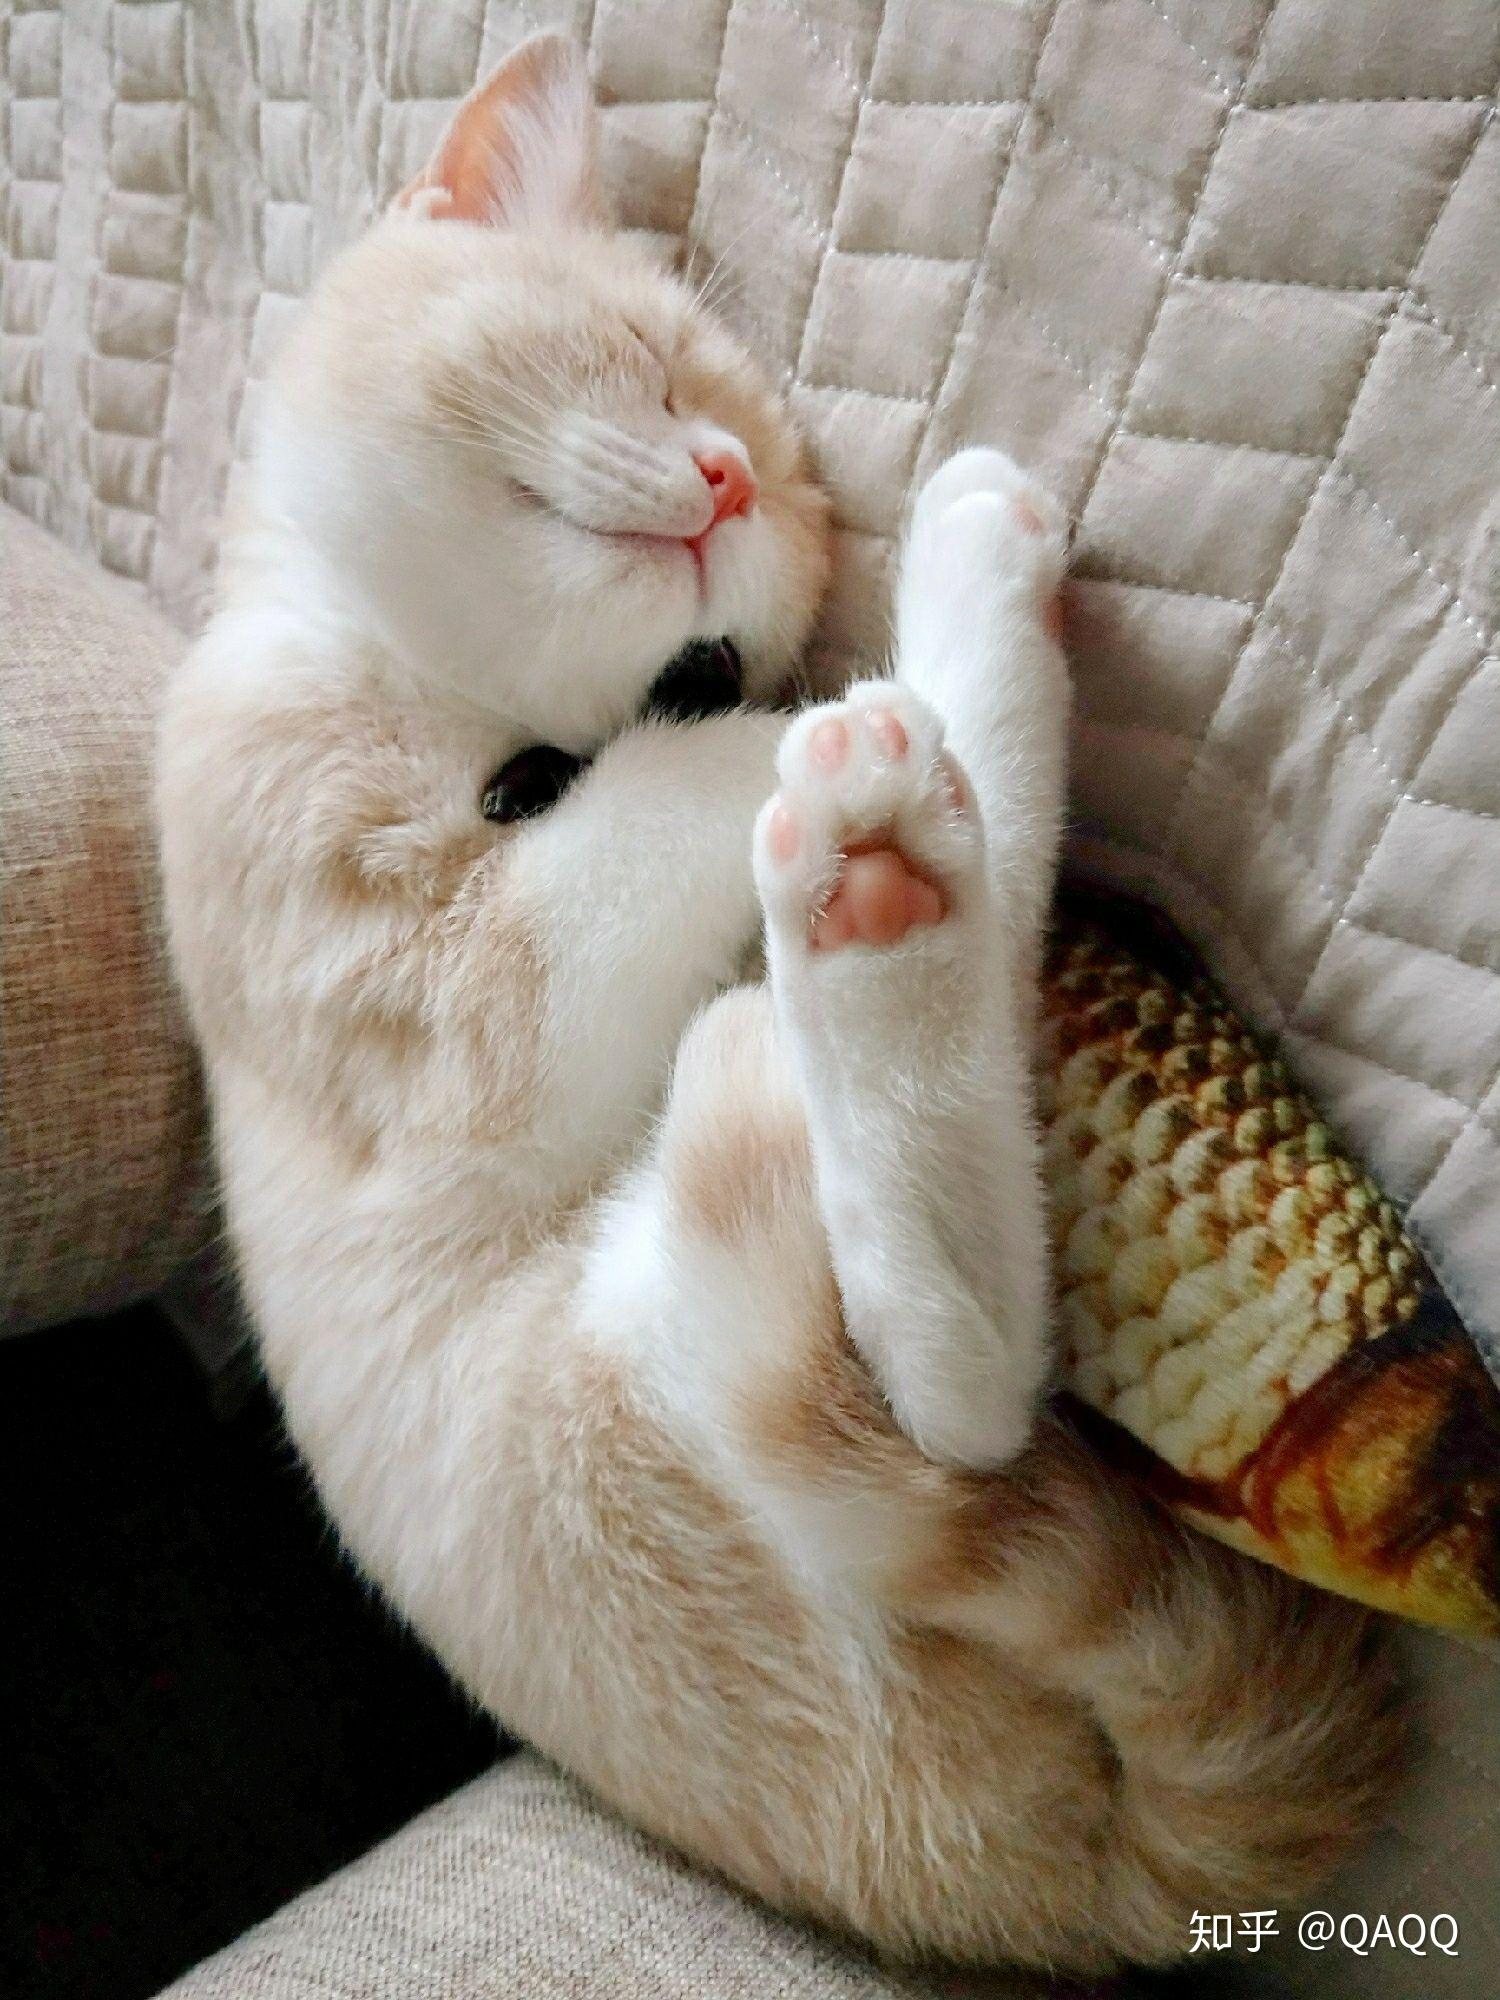 趴着睡懒觉的白猫